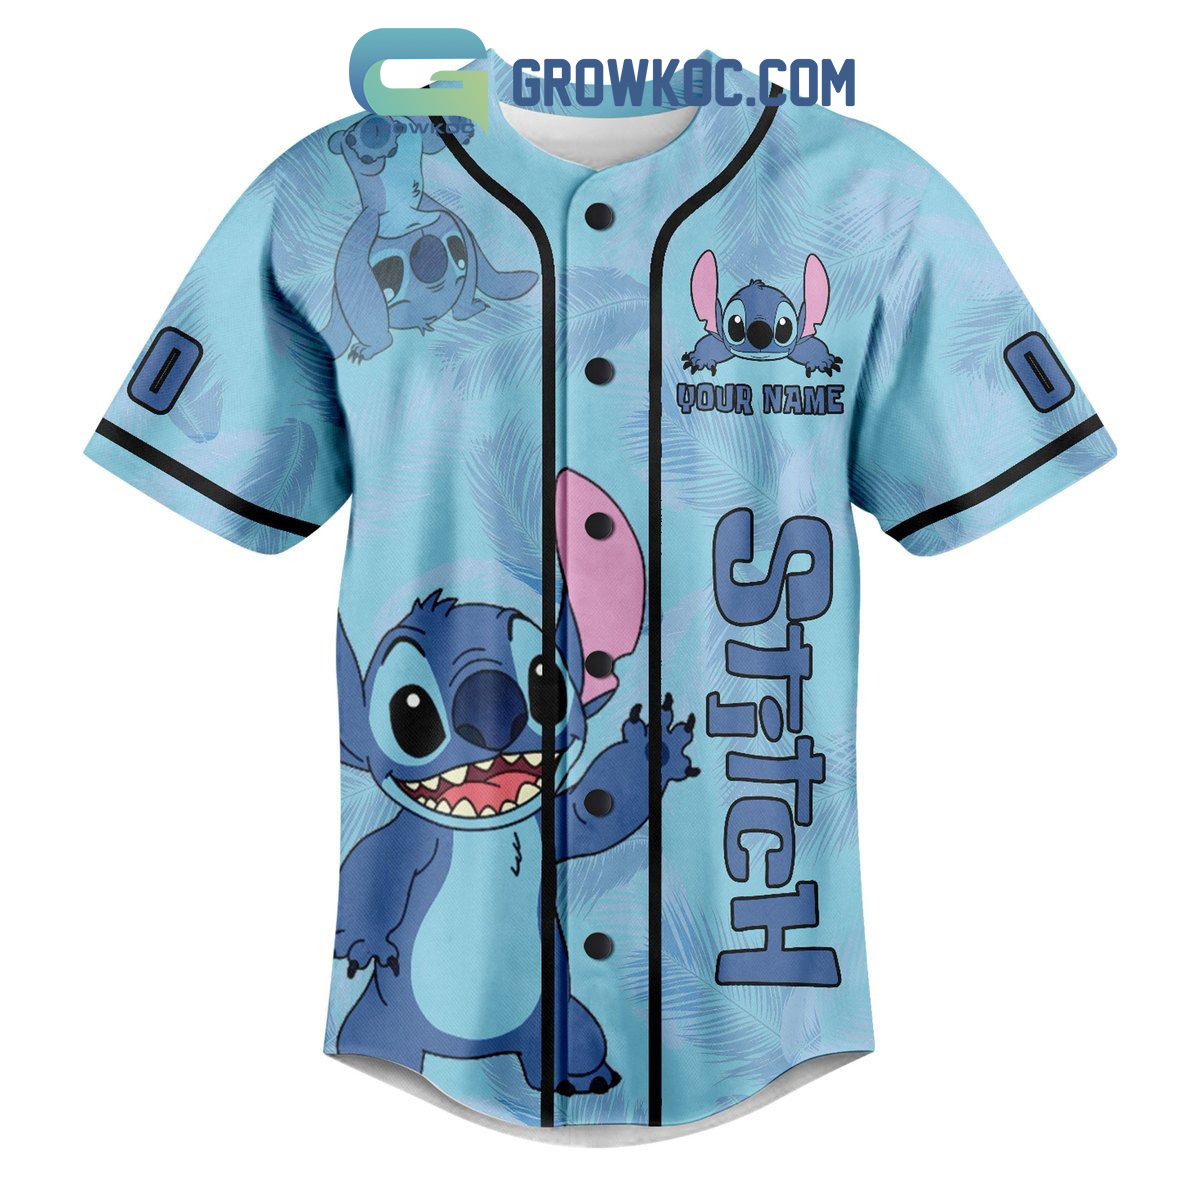 Stitch Is My Spirit Animal Personalized Baseball Jersey